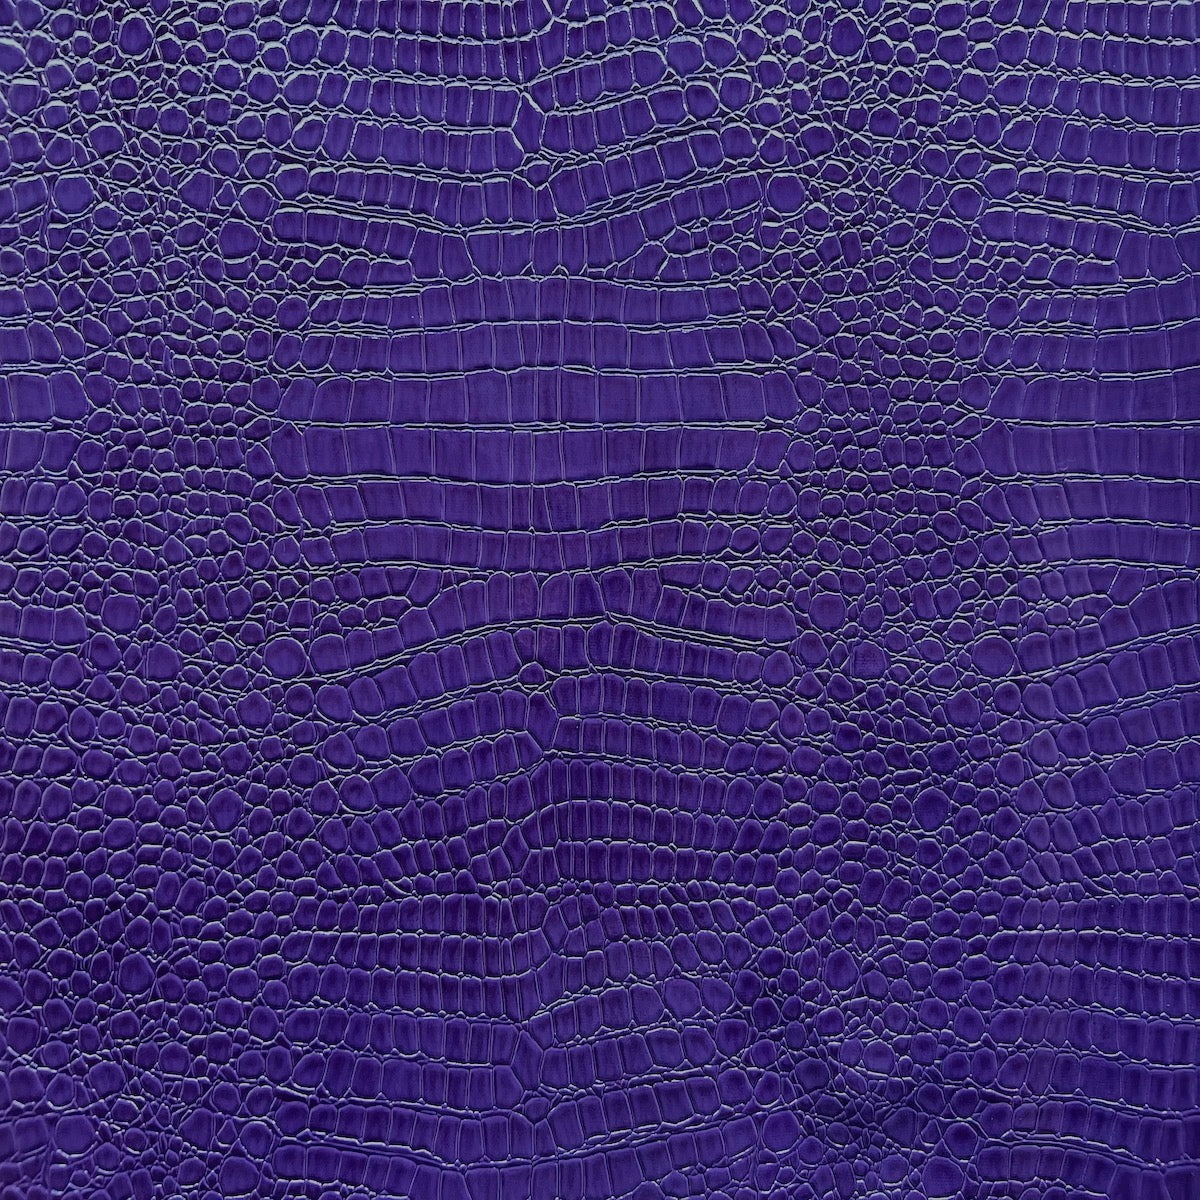 Tissu vinyle violet avec des crocodiles 